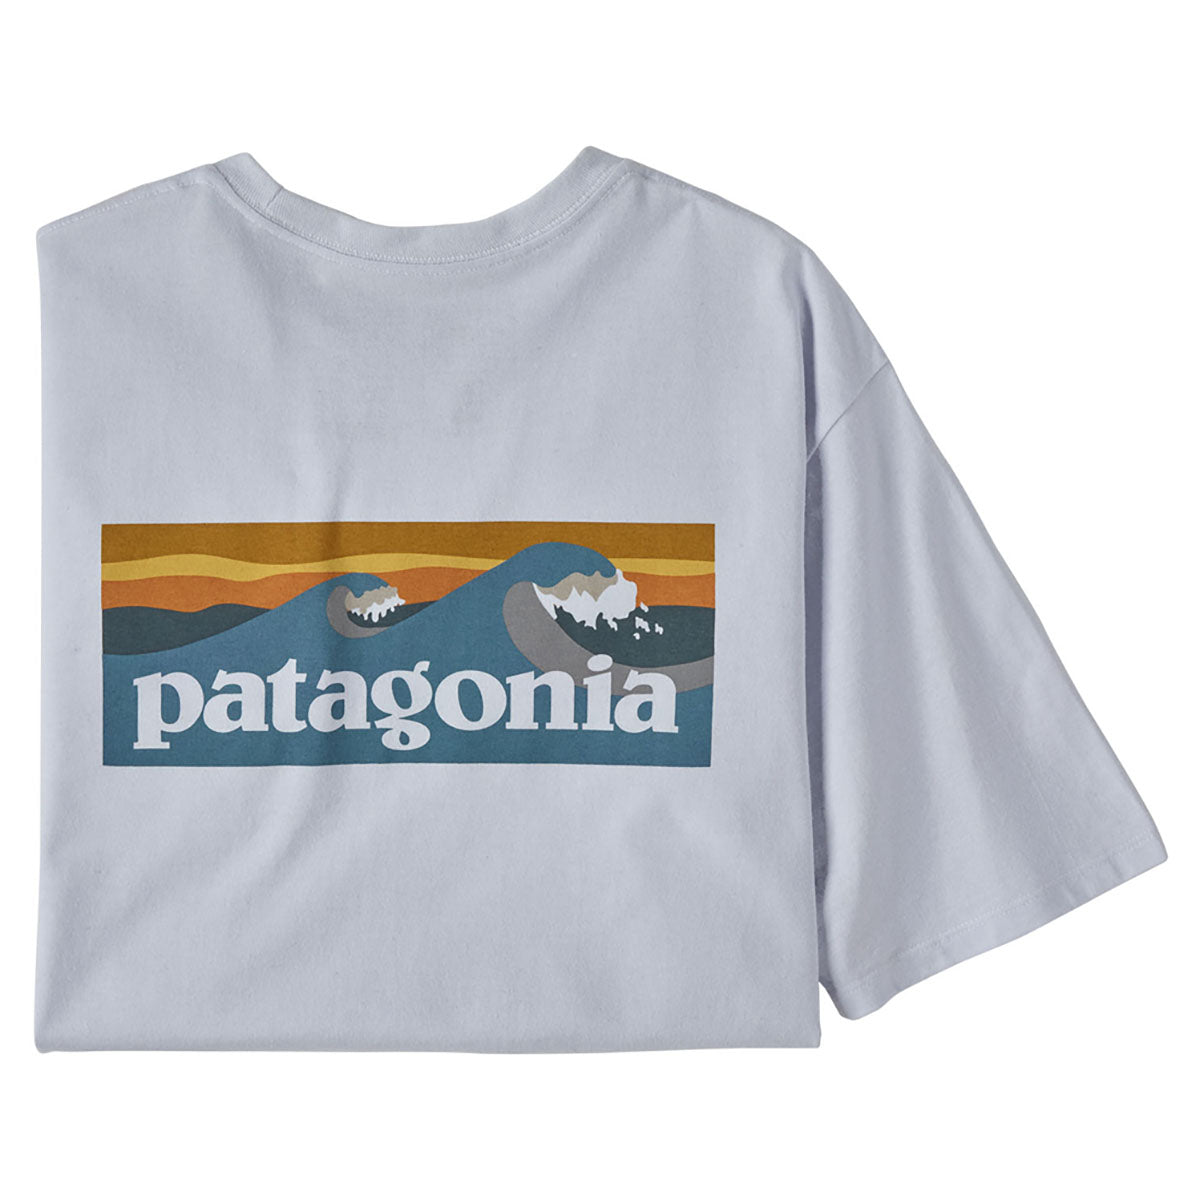 Patagonia Boardshort Logo Pocket T-Shirt - White